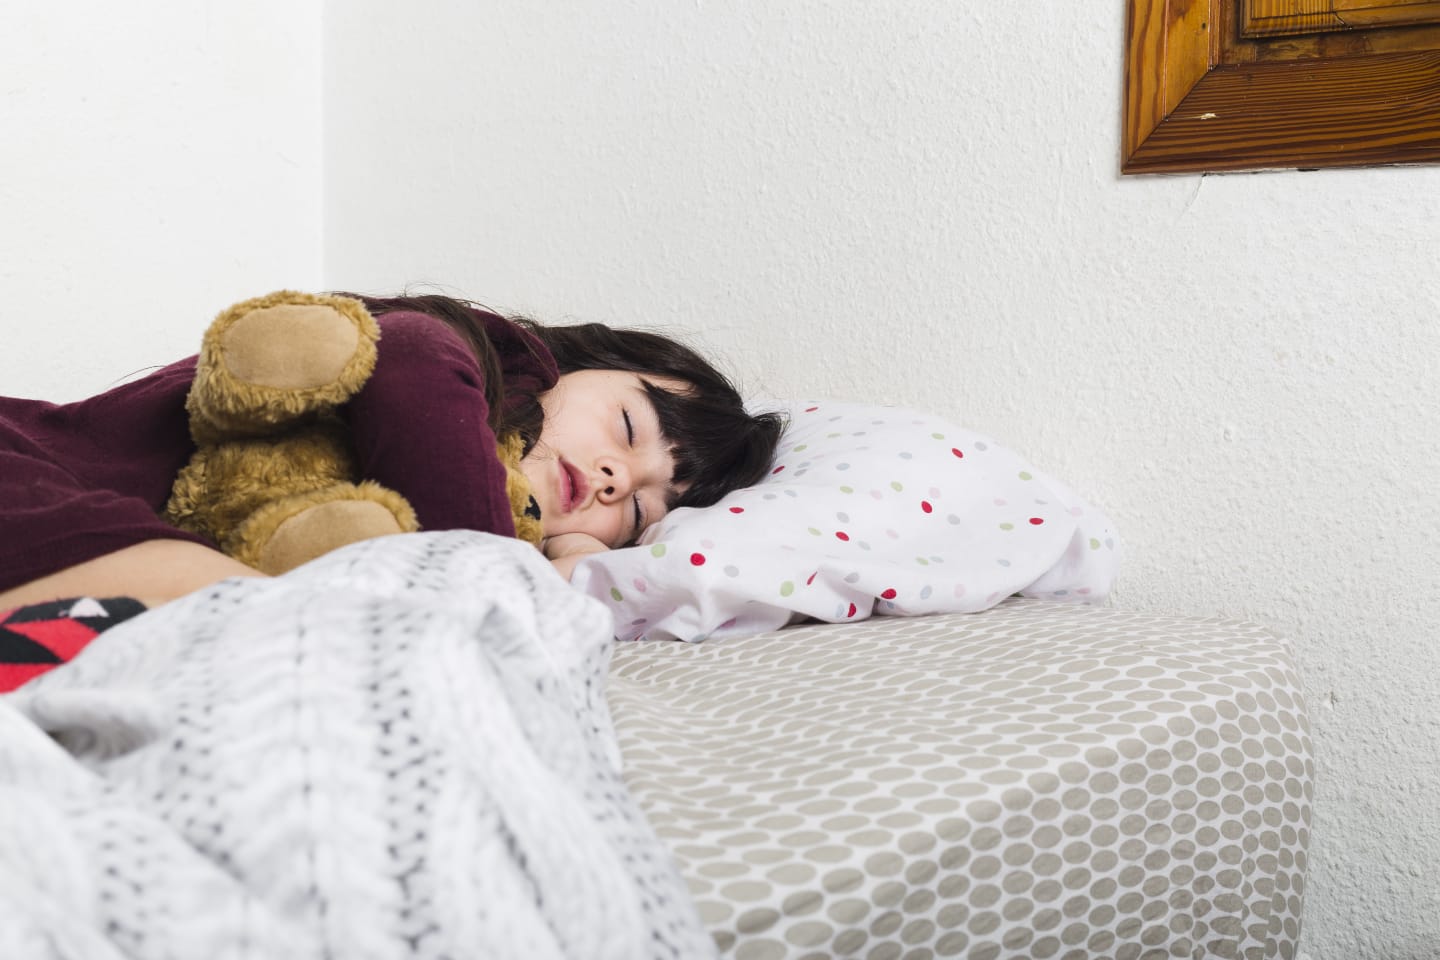 Seguir una buena rutina de hábitos saludables favorece una buena calidad de sueño en los niños.